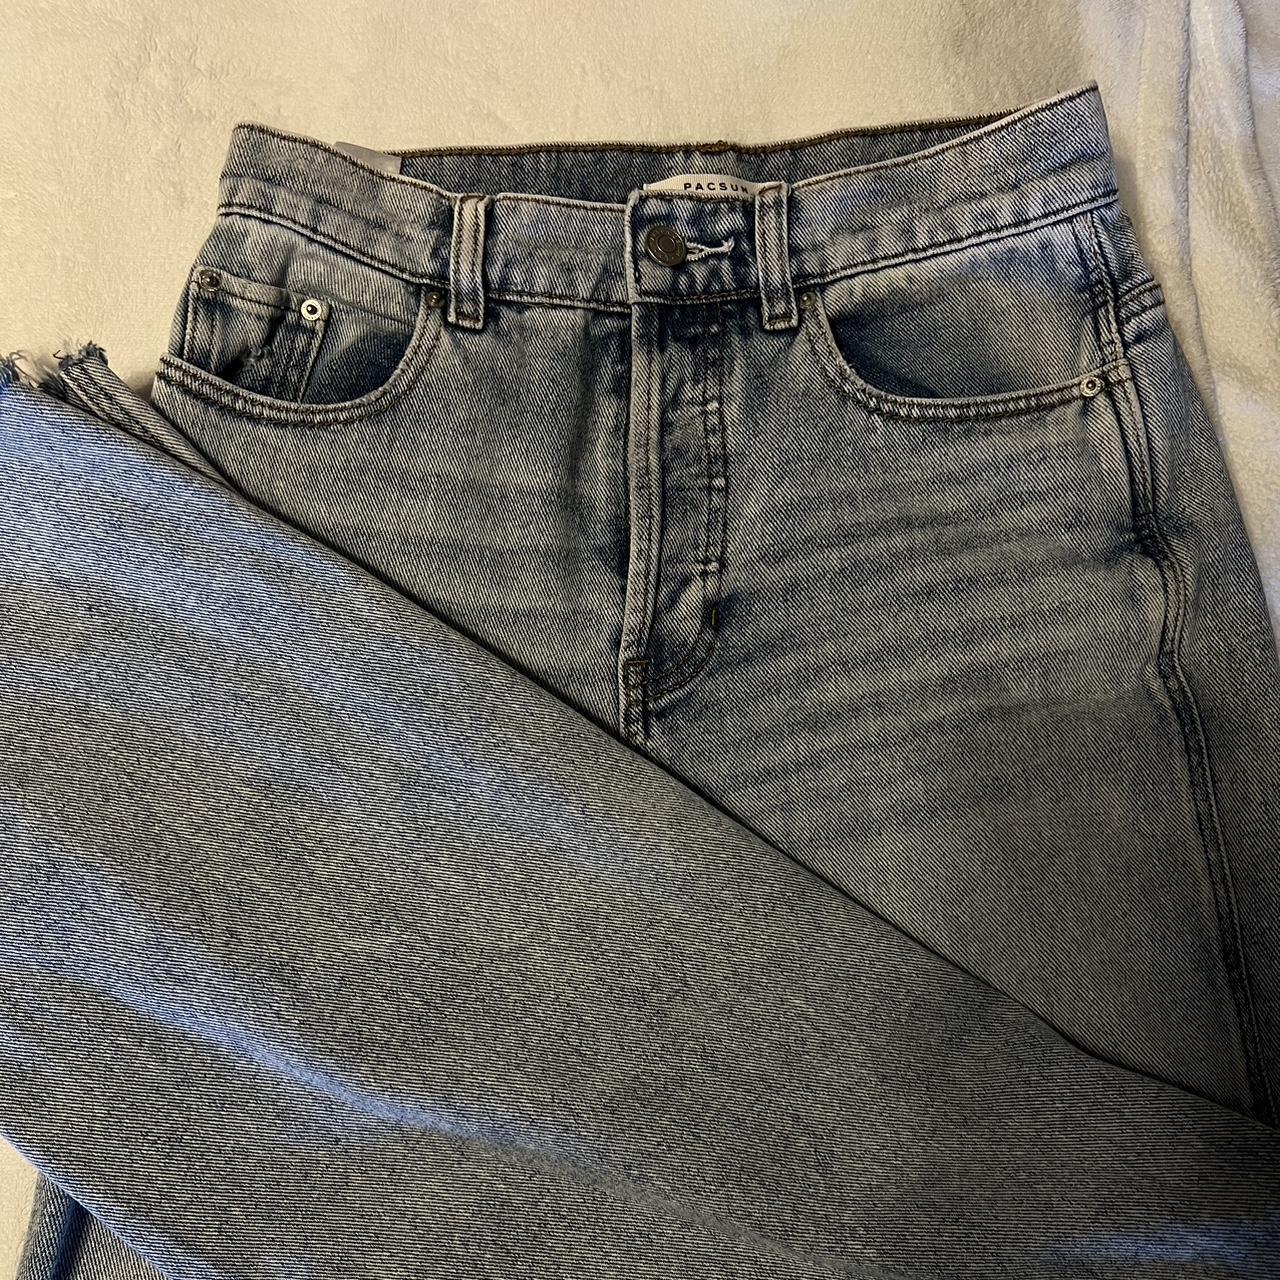 Pacsun baggy jeans -button instead of zipper - Depop